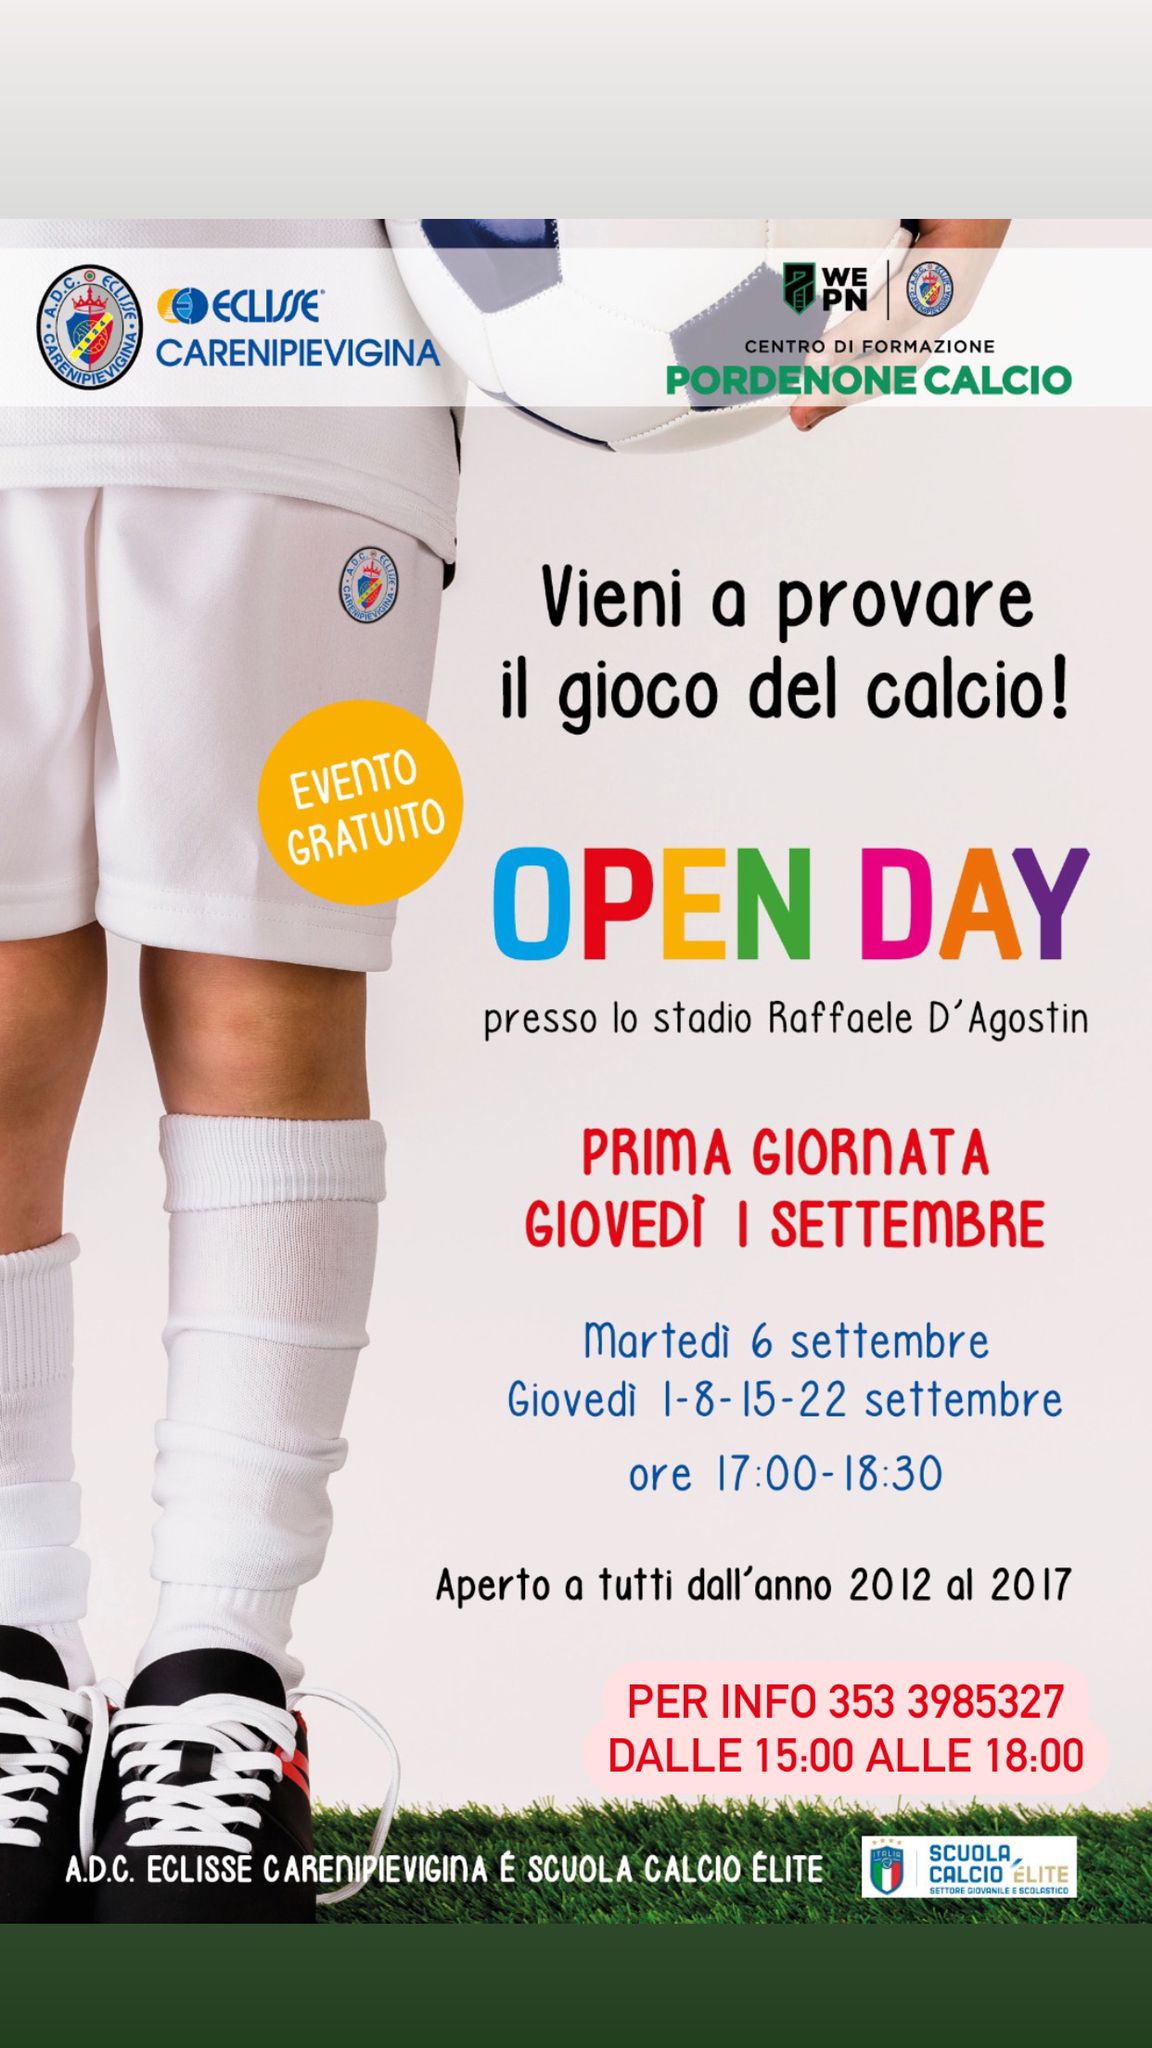 Open Day – Vieni a provare il gioco del calcio!